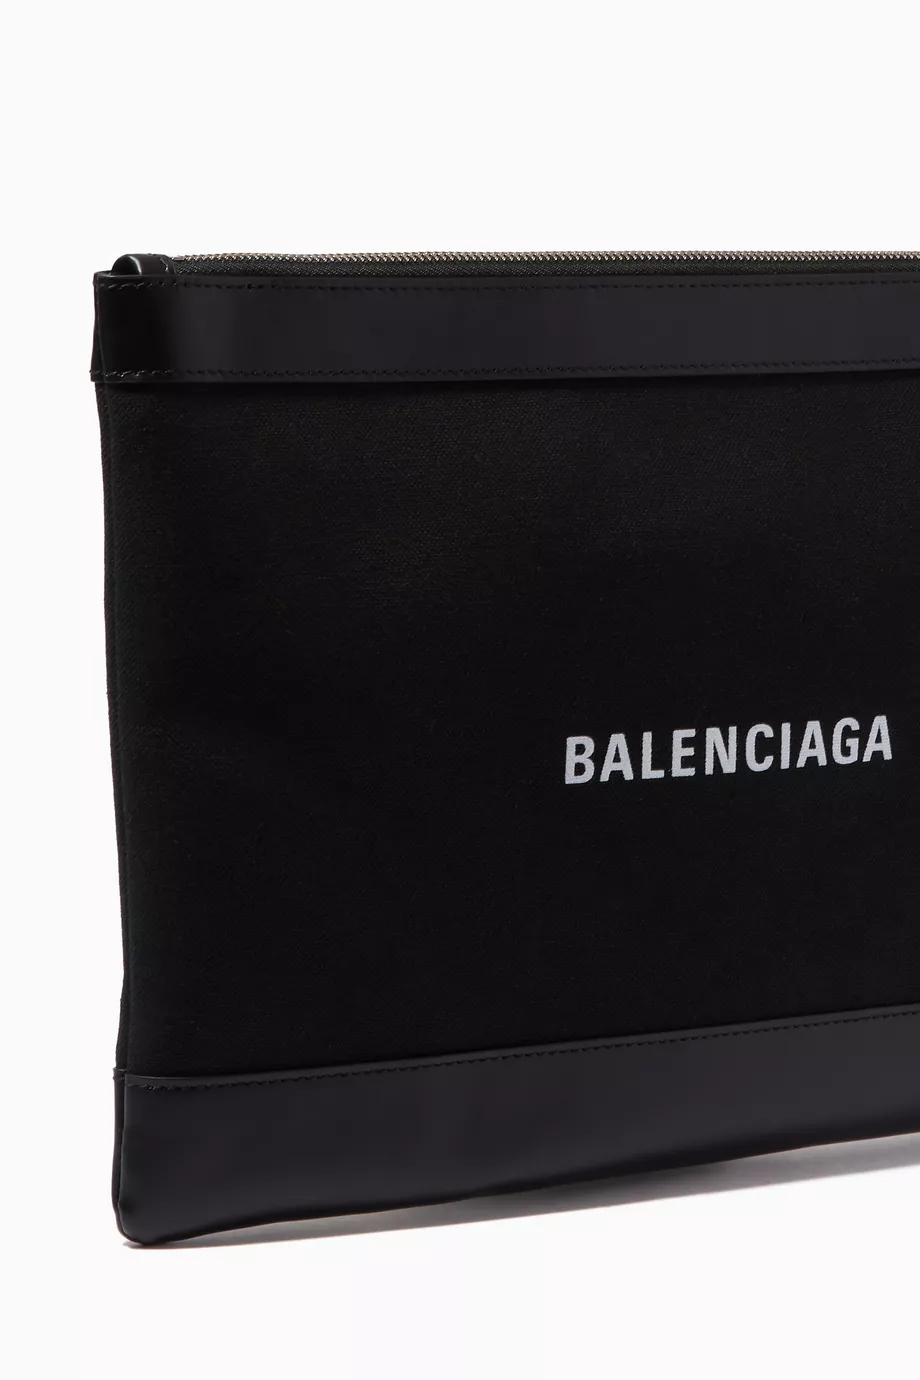 Buy Balenciaga Black Navy Clip Medium Pouch in Cotton Canvas